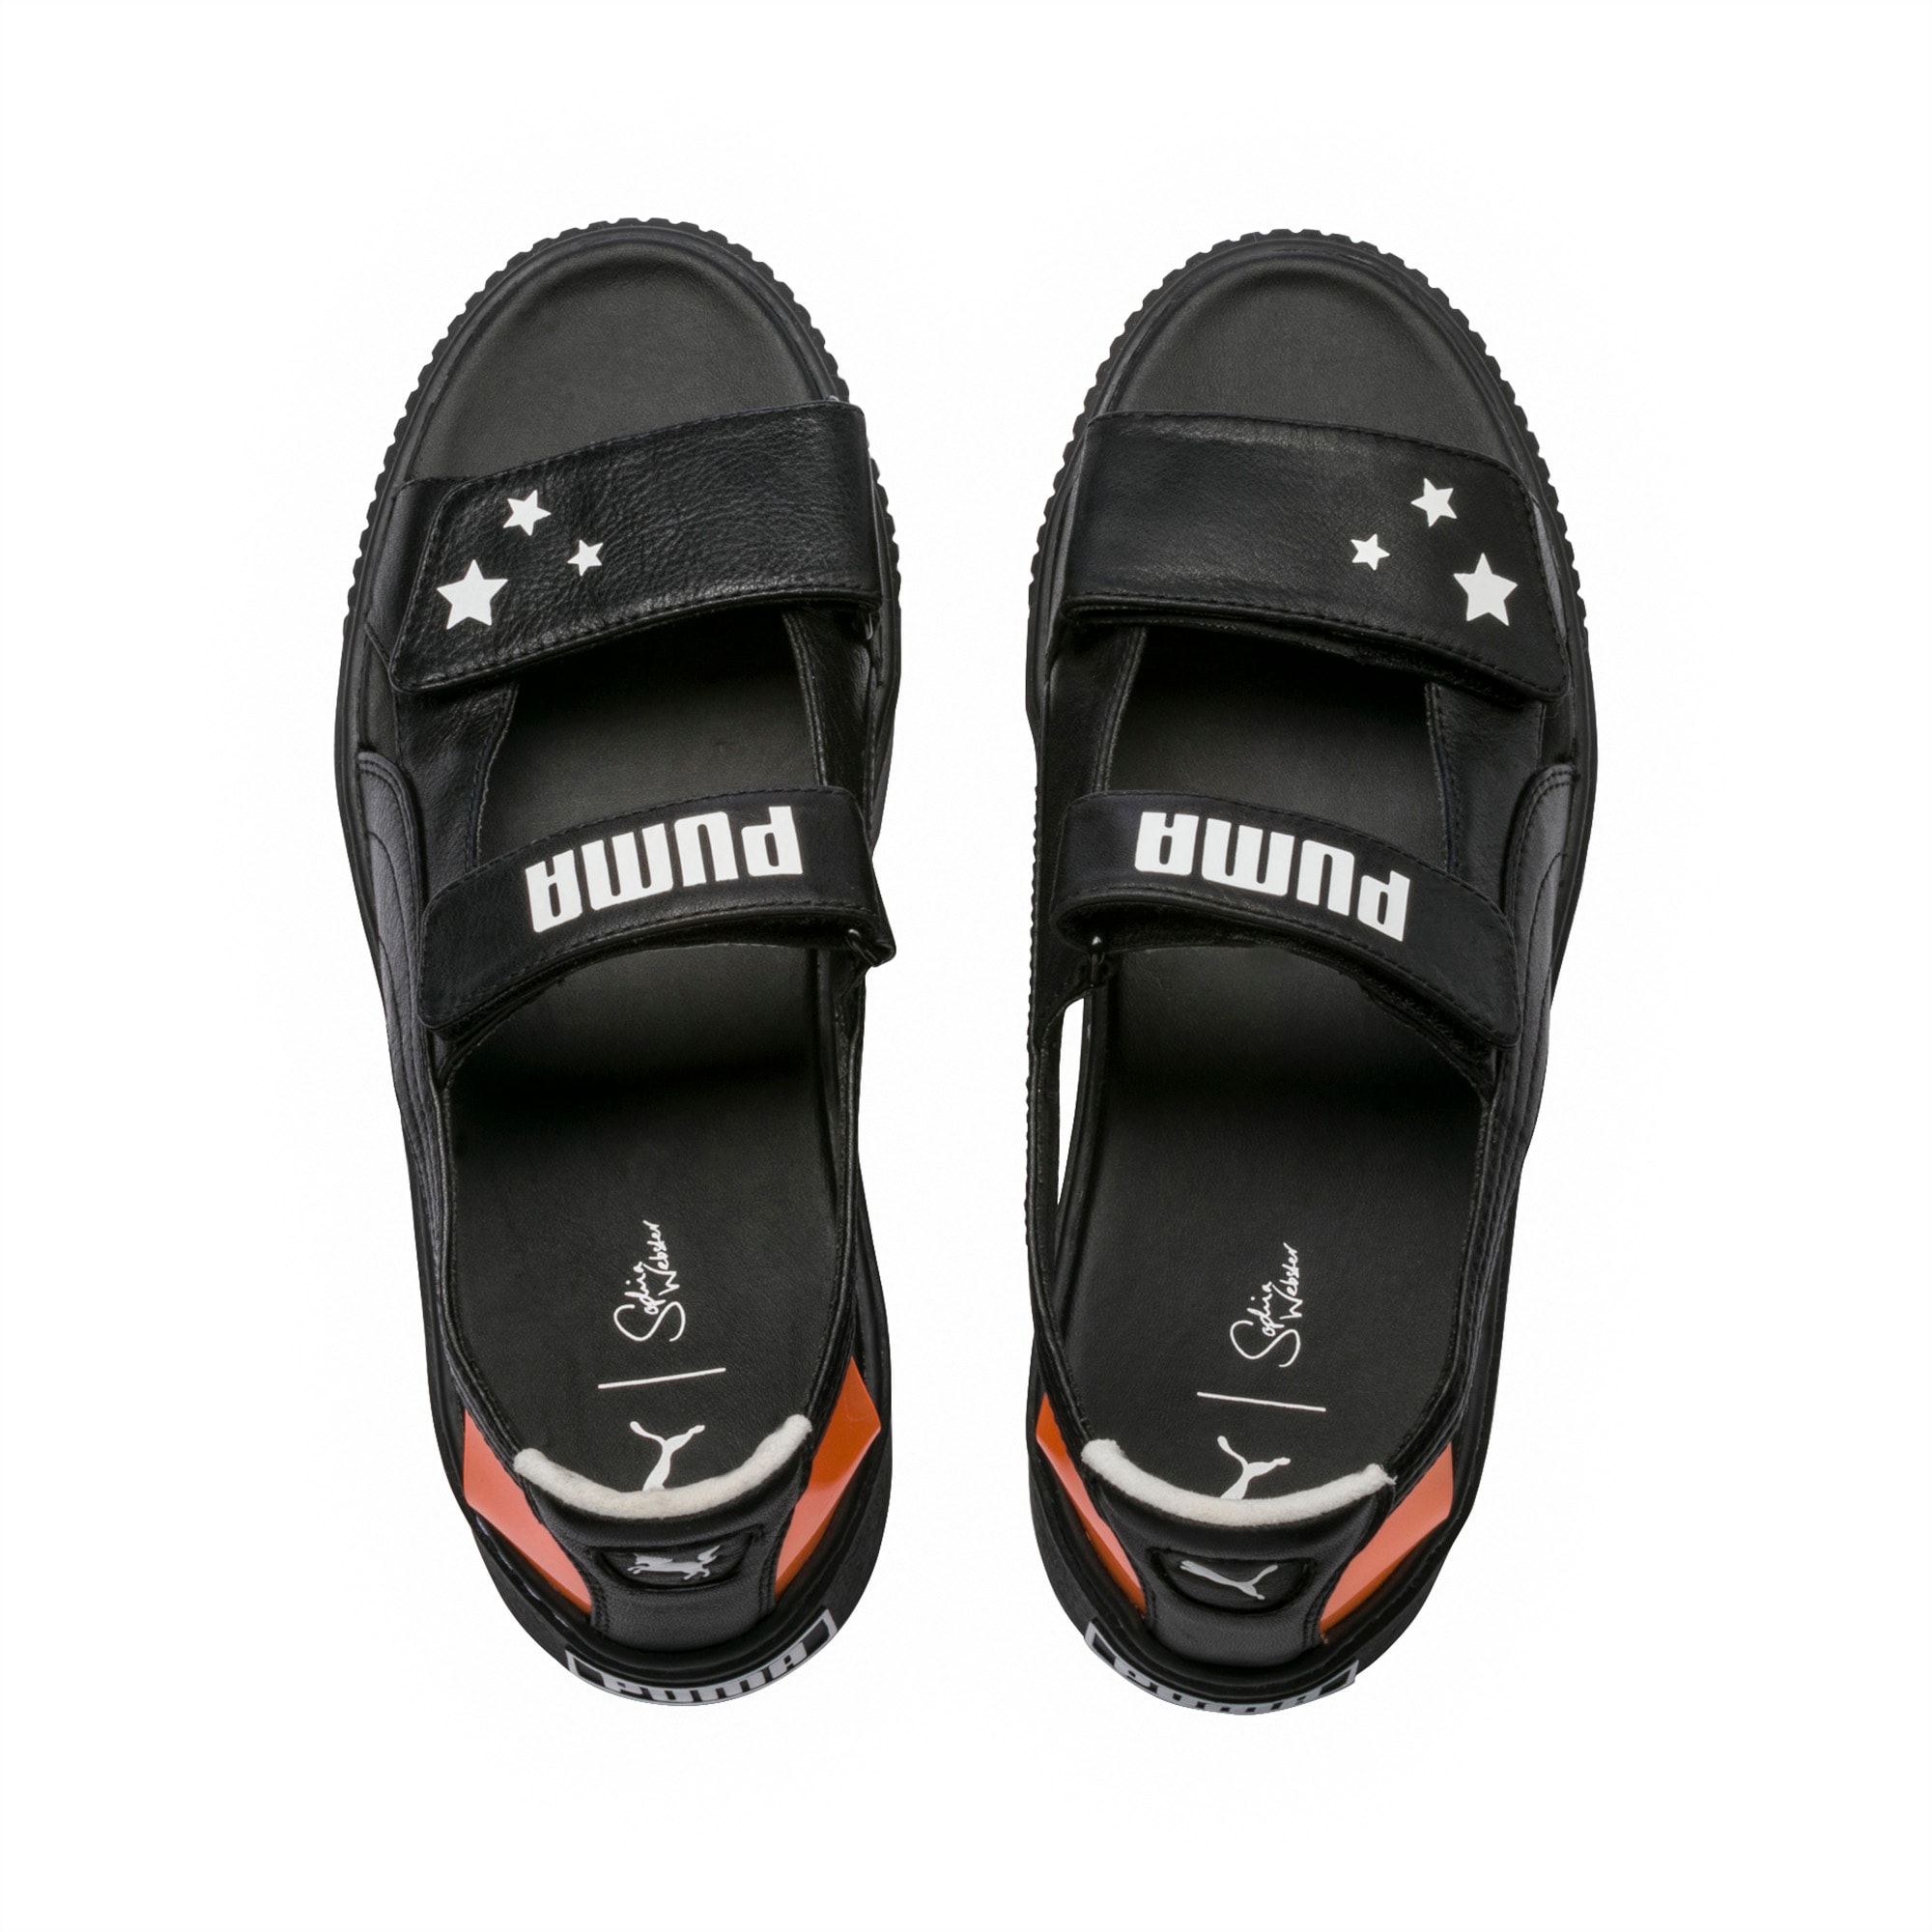 puma x sophia webster platform sandals